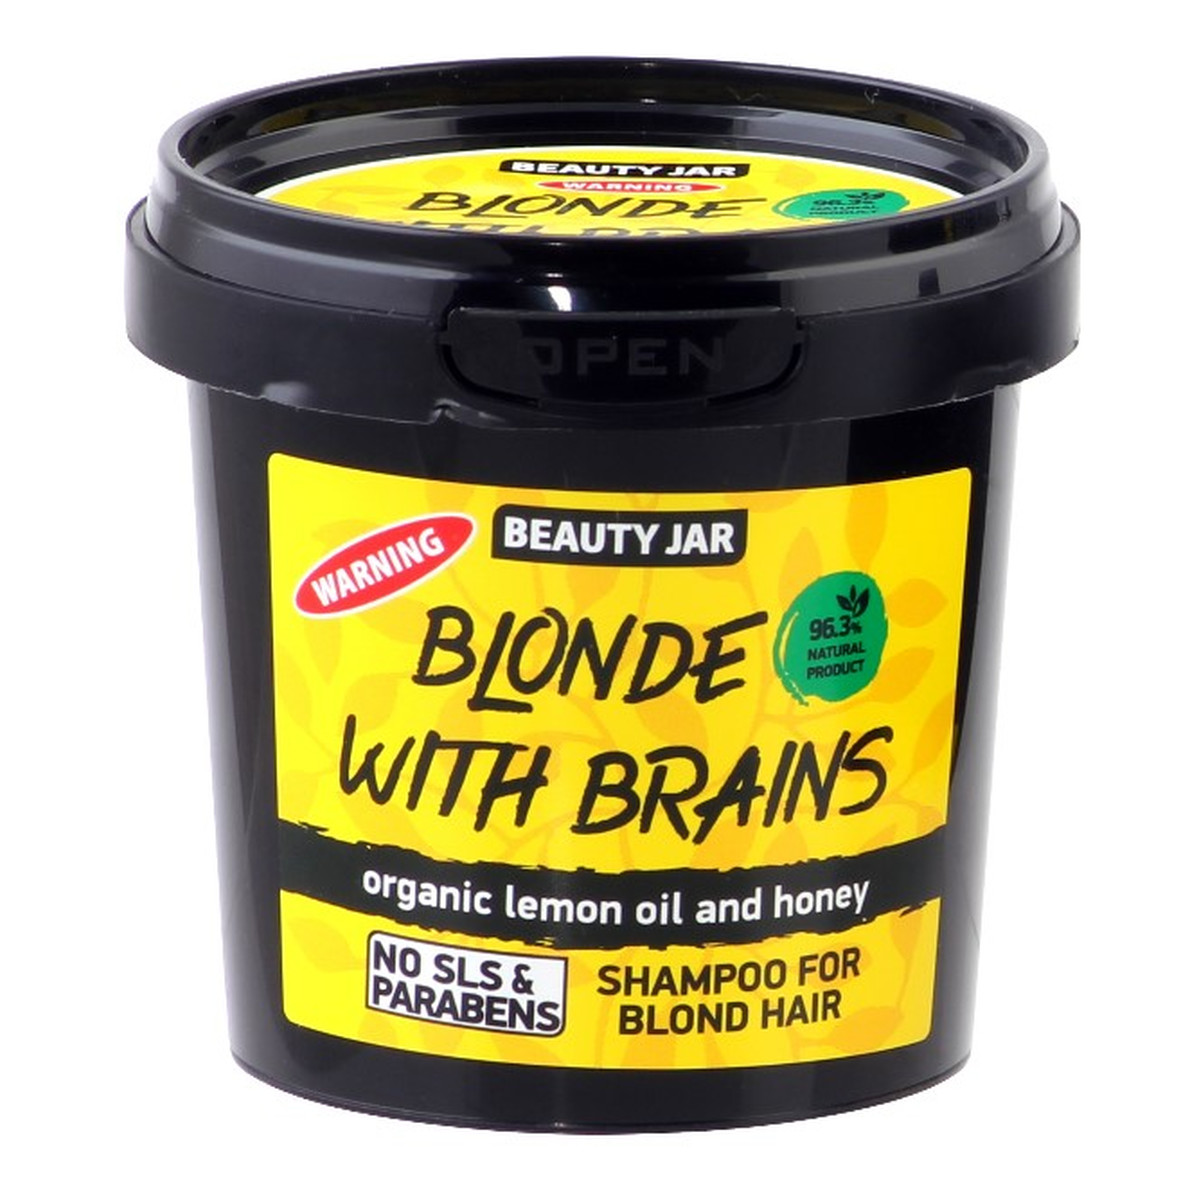 Beauty Jar BLONDE WITH BRAINS Szampon dla włosów jasnych i blond olejek cytryny i miód 150g